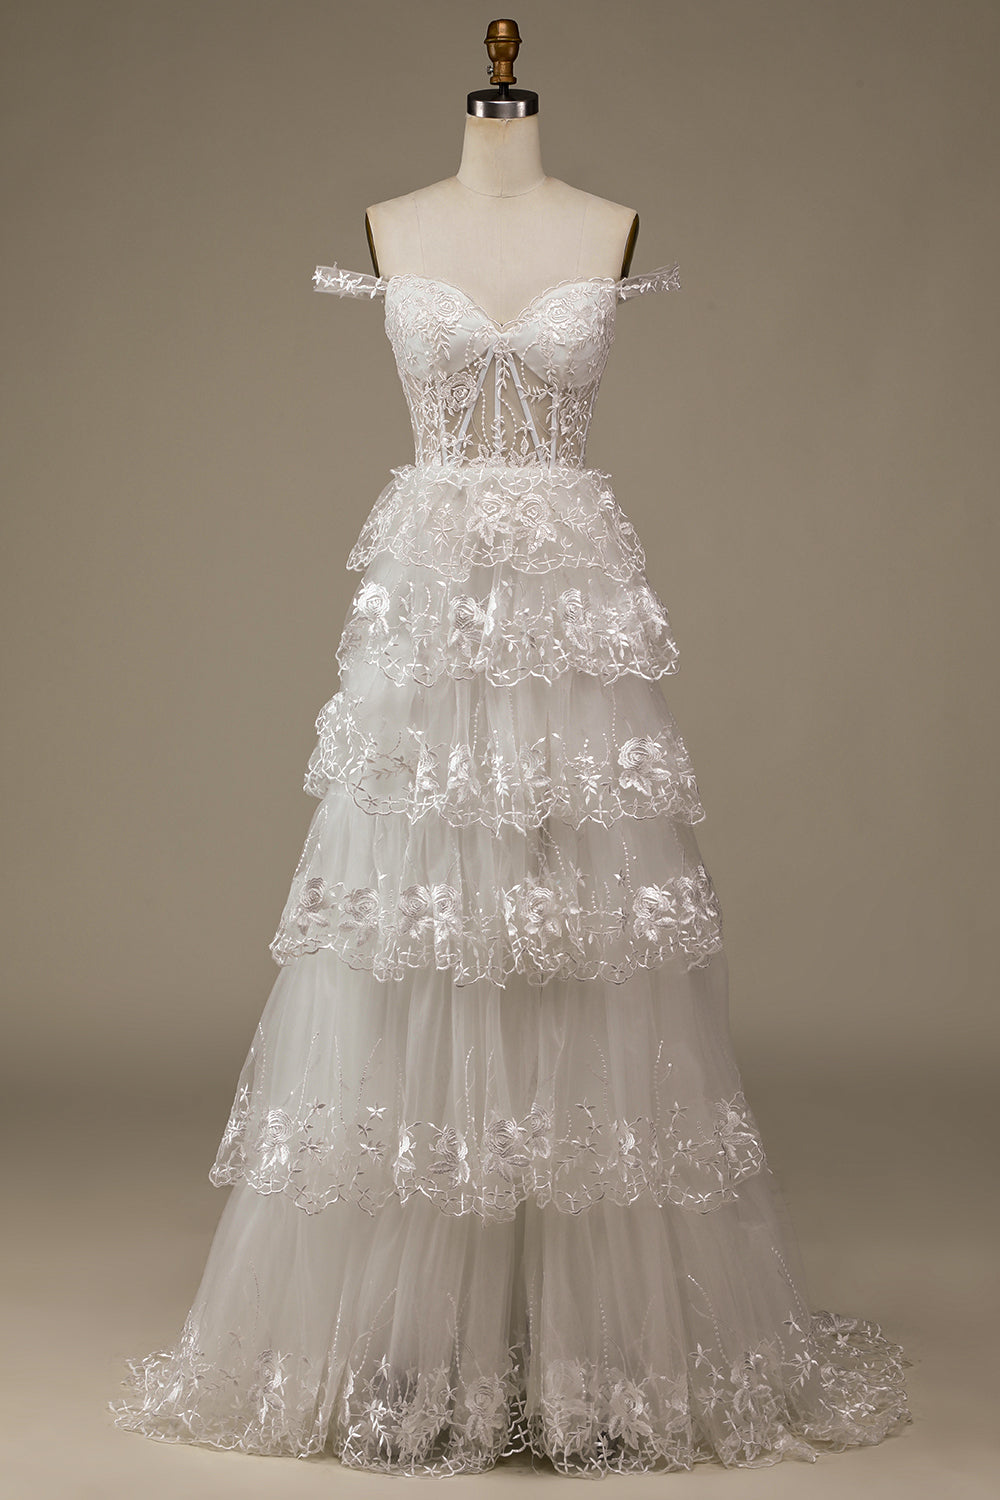 Robe de mariée en dentelle blanche scintillante avec fente